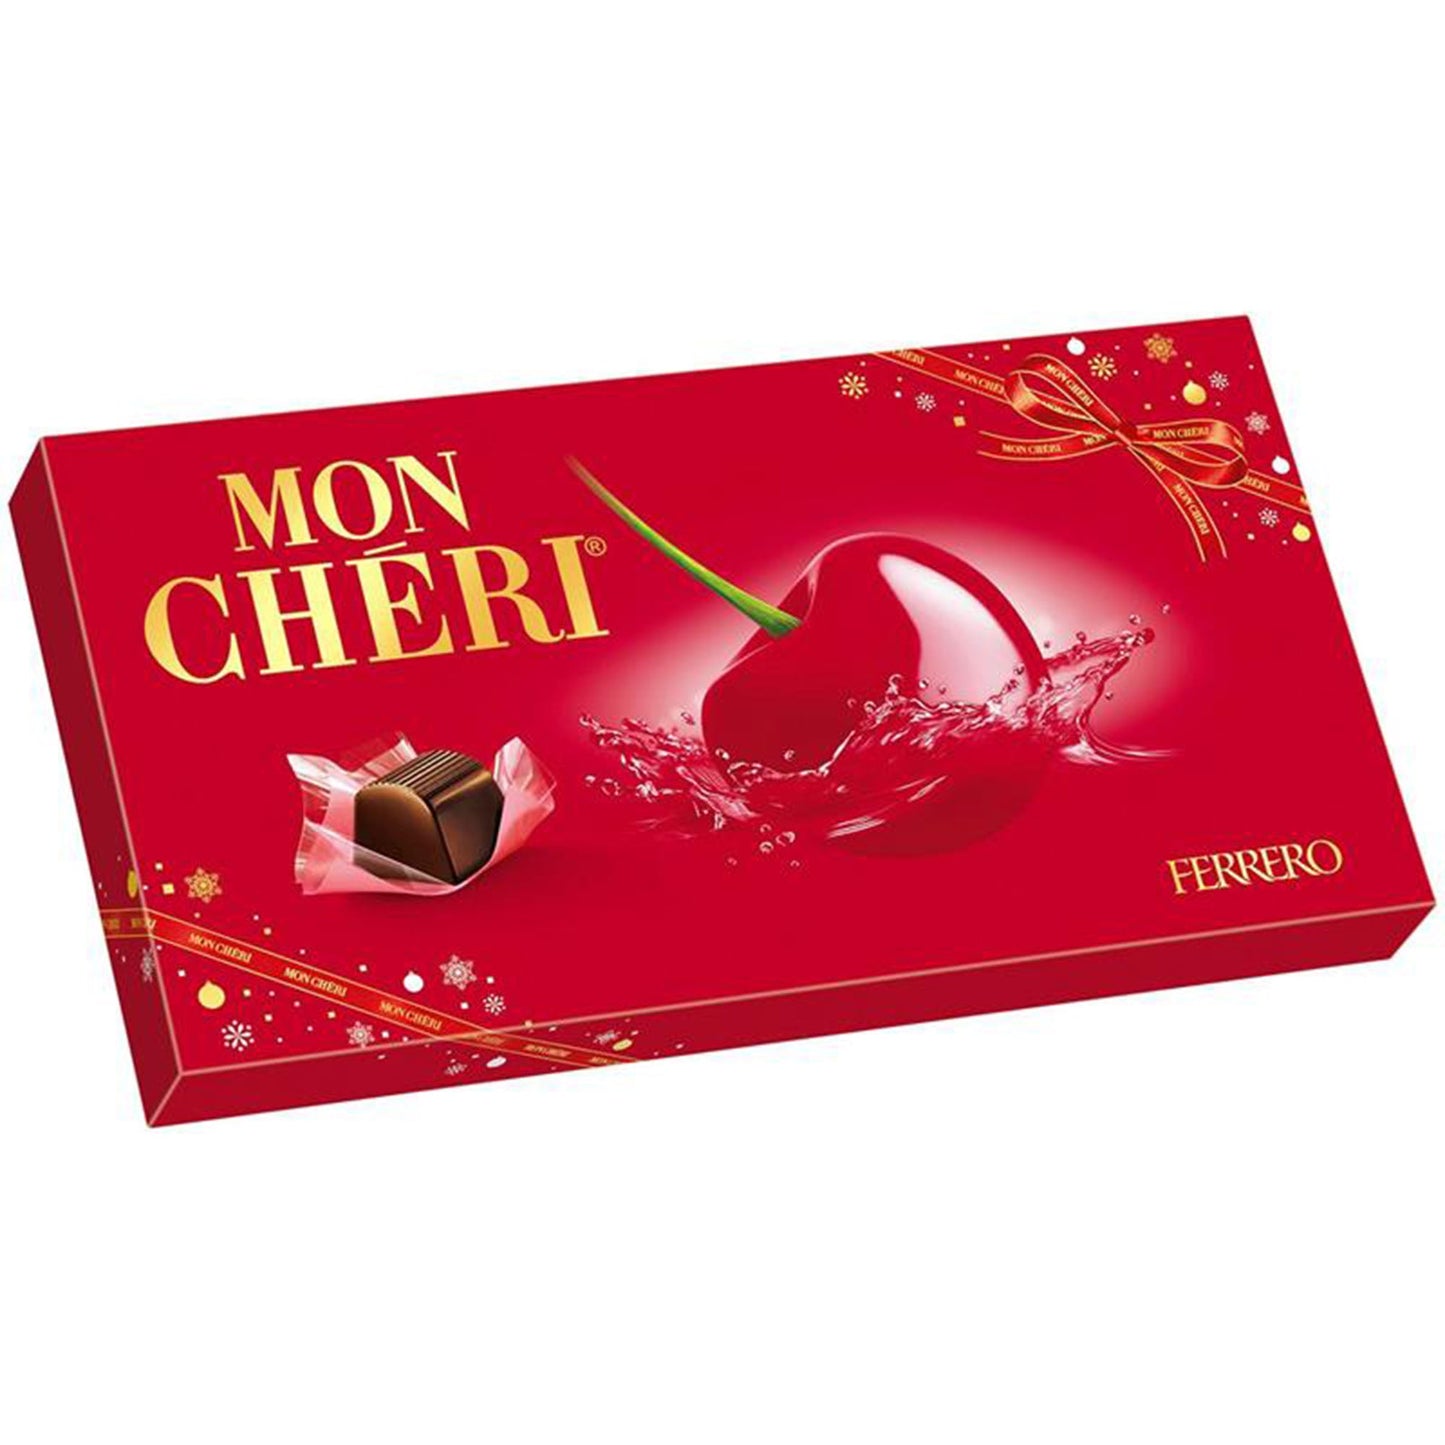 Ferrero Mon Cheri chocolates 15 pack – buy online now! Ferrero